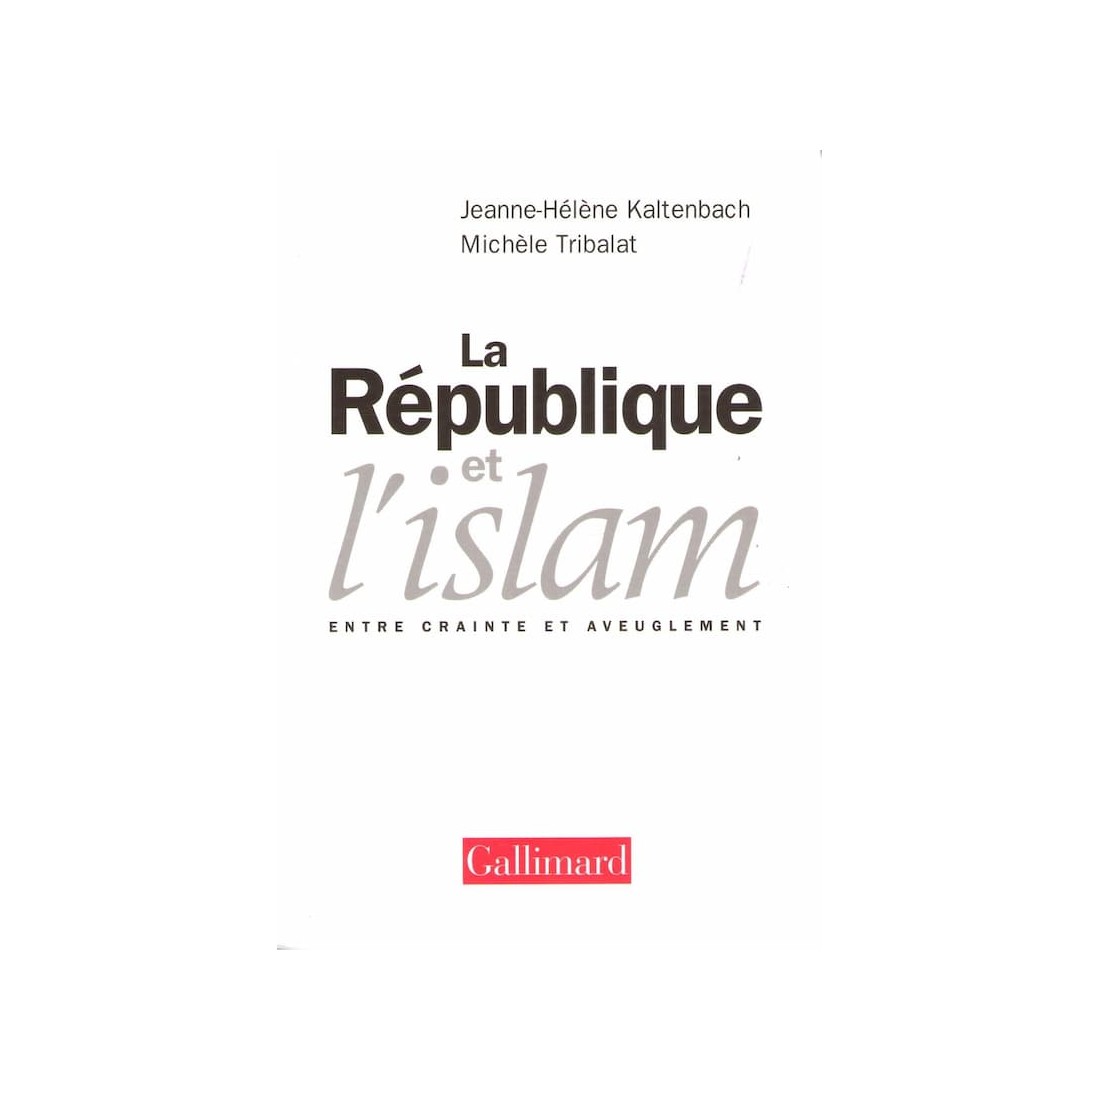 La république et l'islam - Livre de Jeanne Hélène Kaltenbach et Michéle Tribalat - Ocazlivres.com